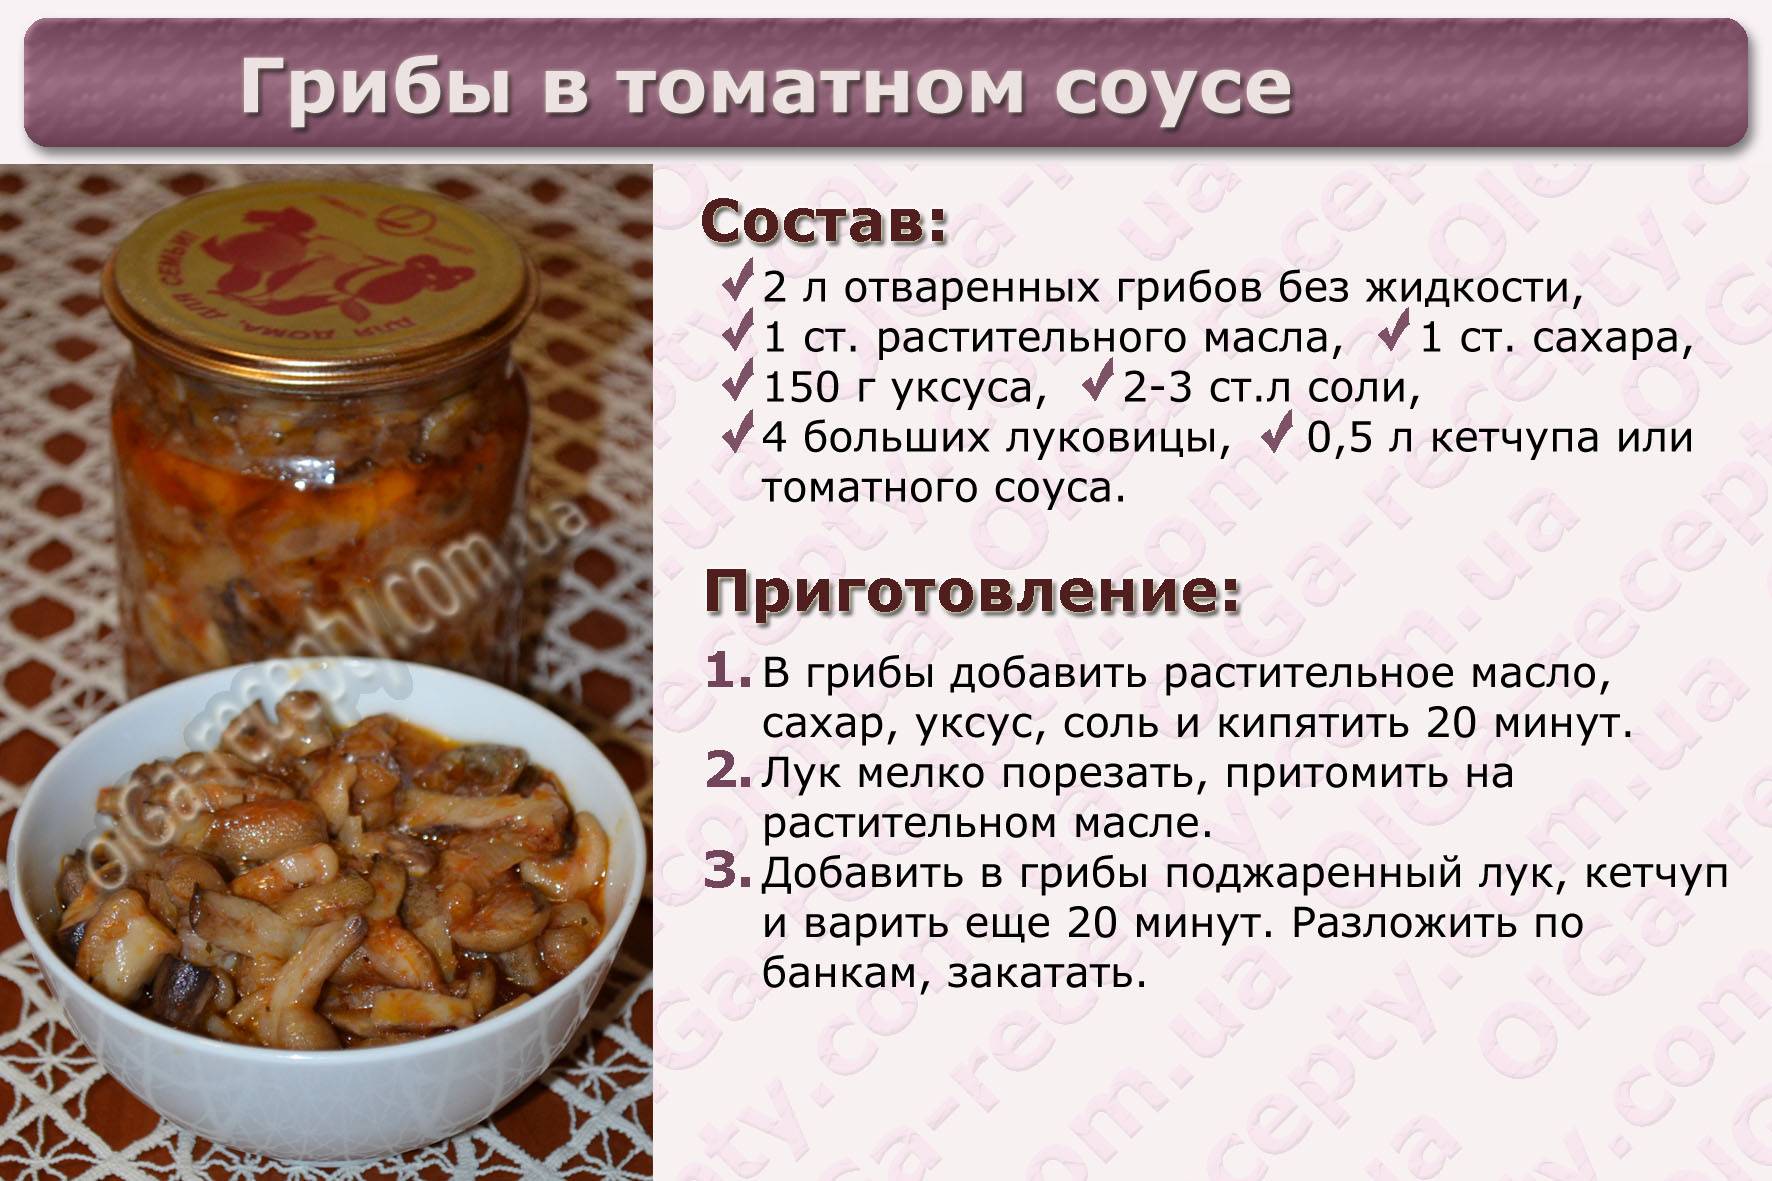 Грибной суп - 14 самых вкусных рецептов приготовления